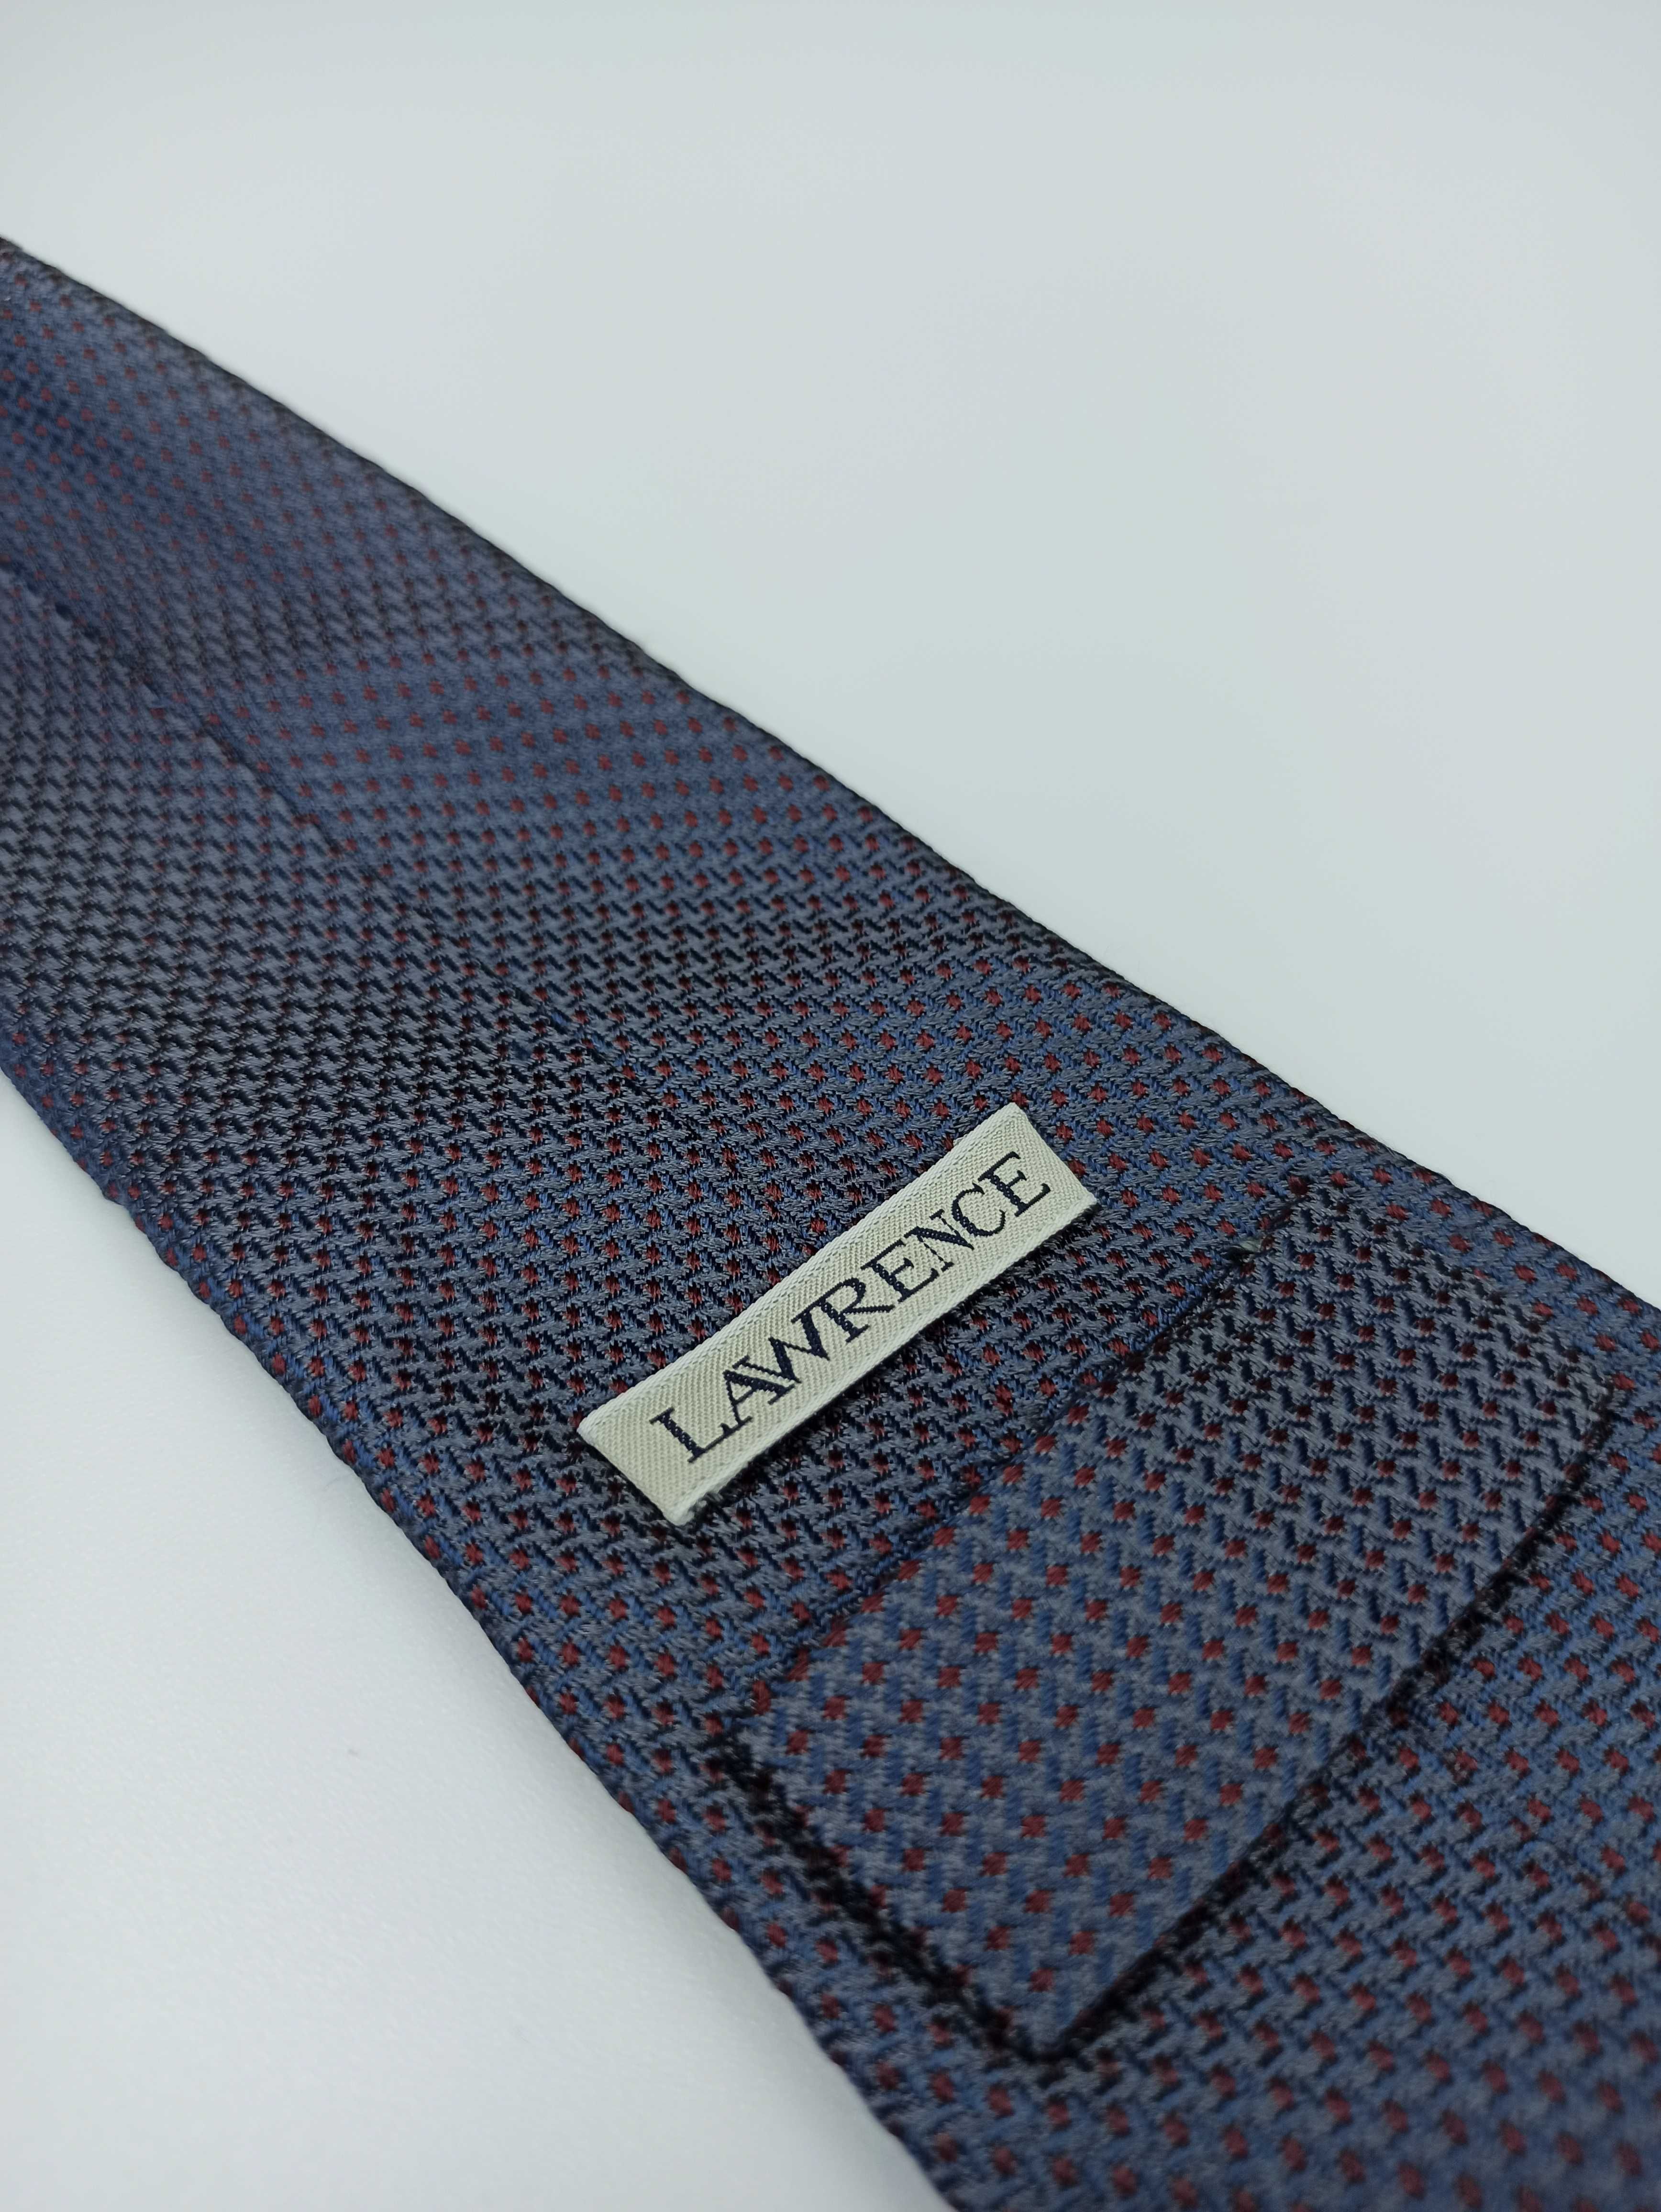 Lawrence granatowy bordowy jedwabny krawat